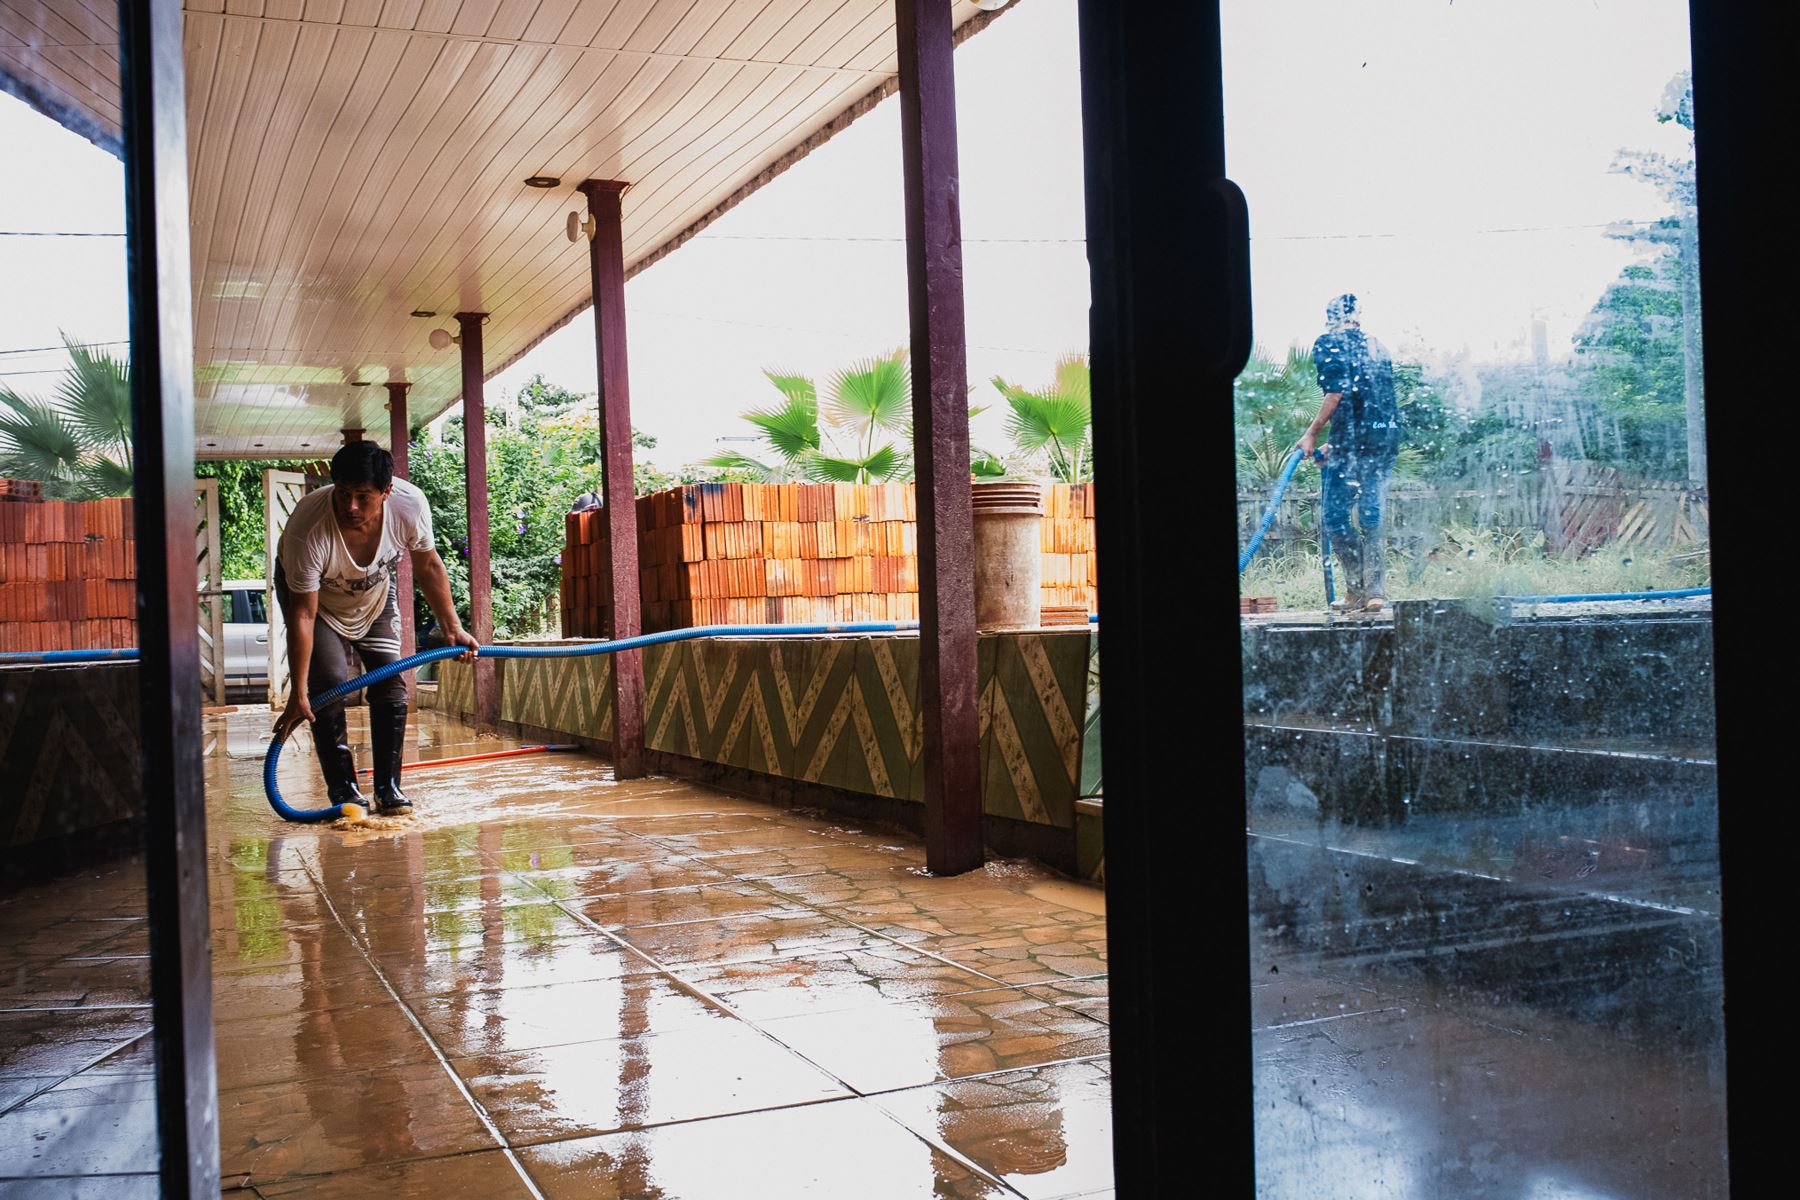 Iñapari, la última ciudad fronteriza que conecta Perú con Brasil a través del Puente de la Integración, en Madre de Dios, ha quedado sumergida desde hace cuatro días, debido al desborde de los ríos Acre y Yaverija.
Foto: cortesía Paolo Peña